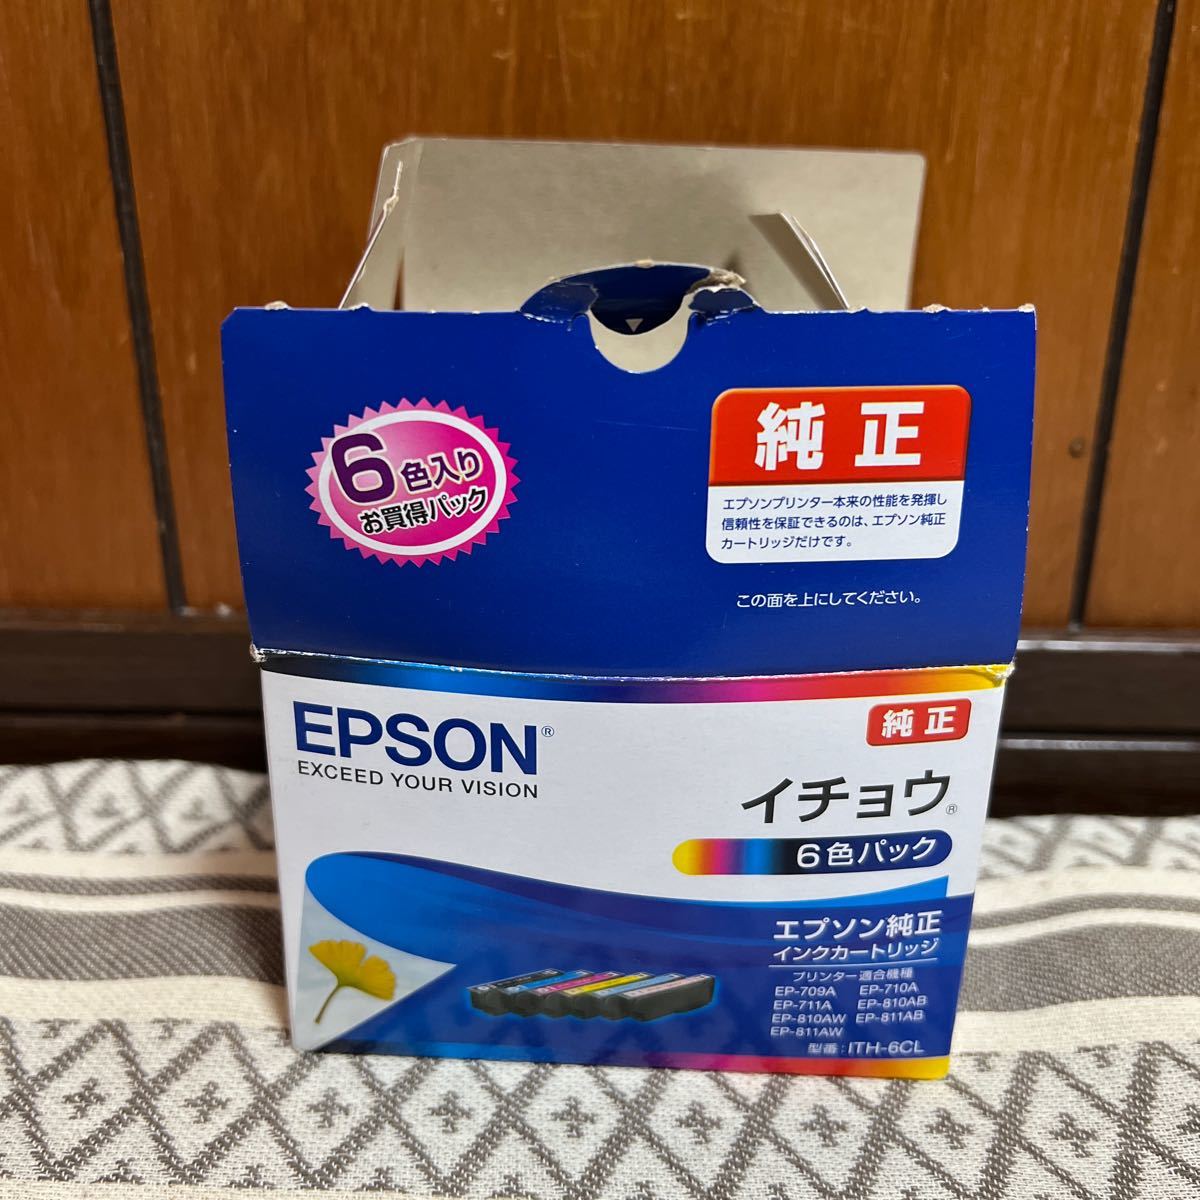 ファッションのファッションのエプソン EPSON (純正)インクカートリッジ(6色パック) ITH-6CL インクカートリッジ、トナー 